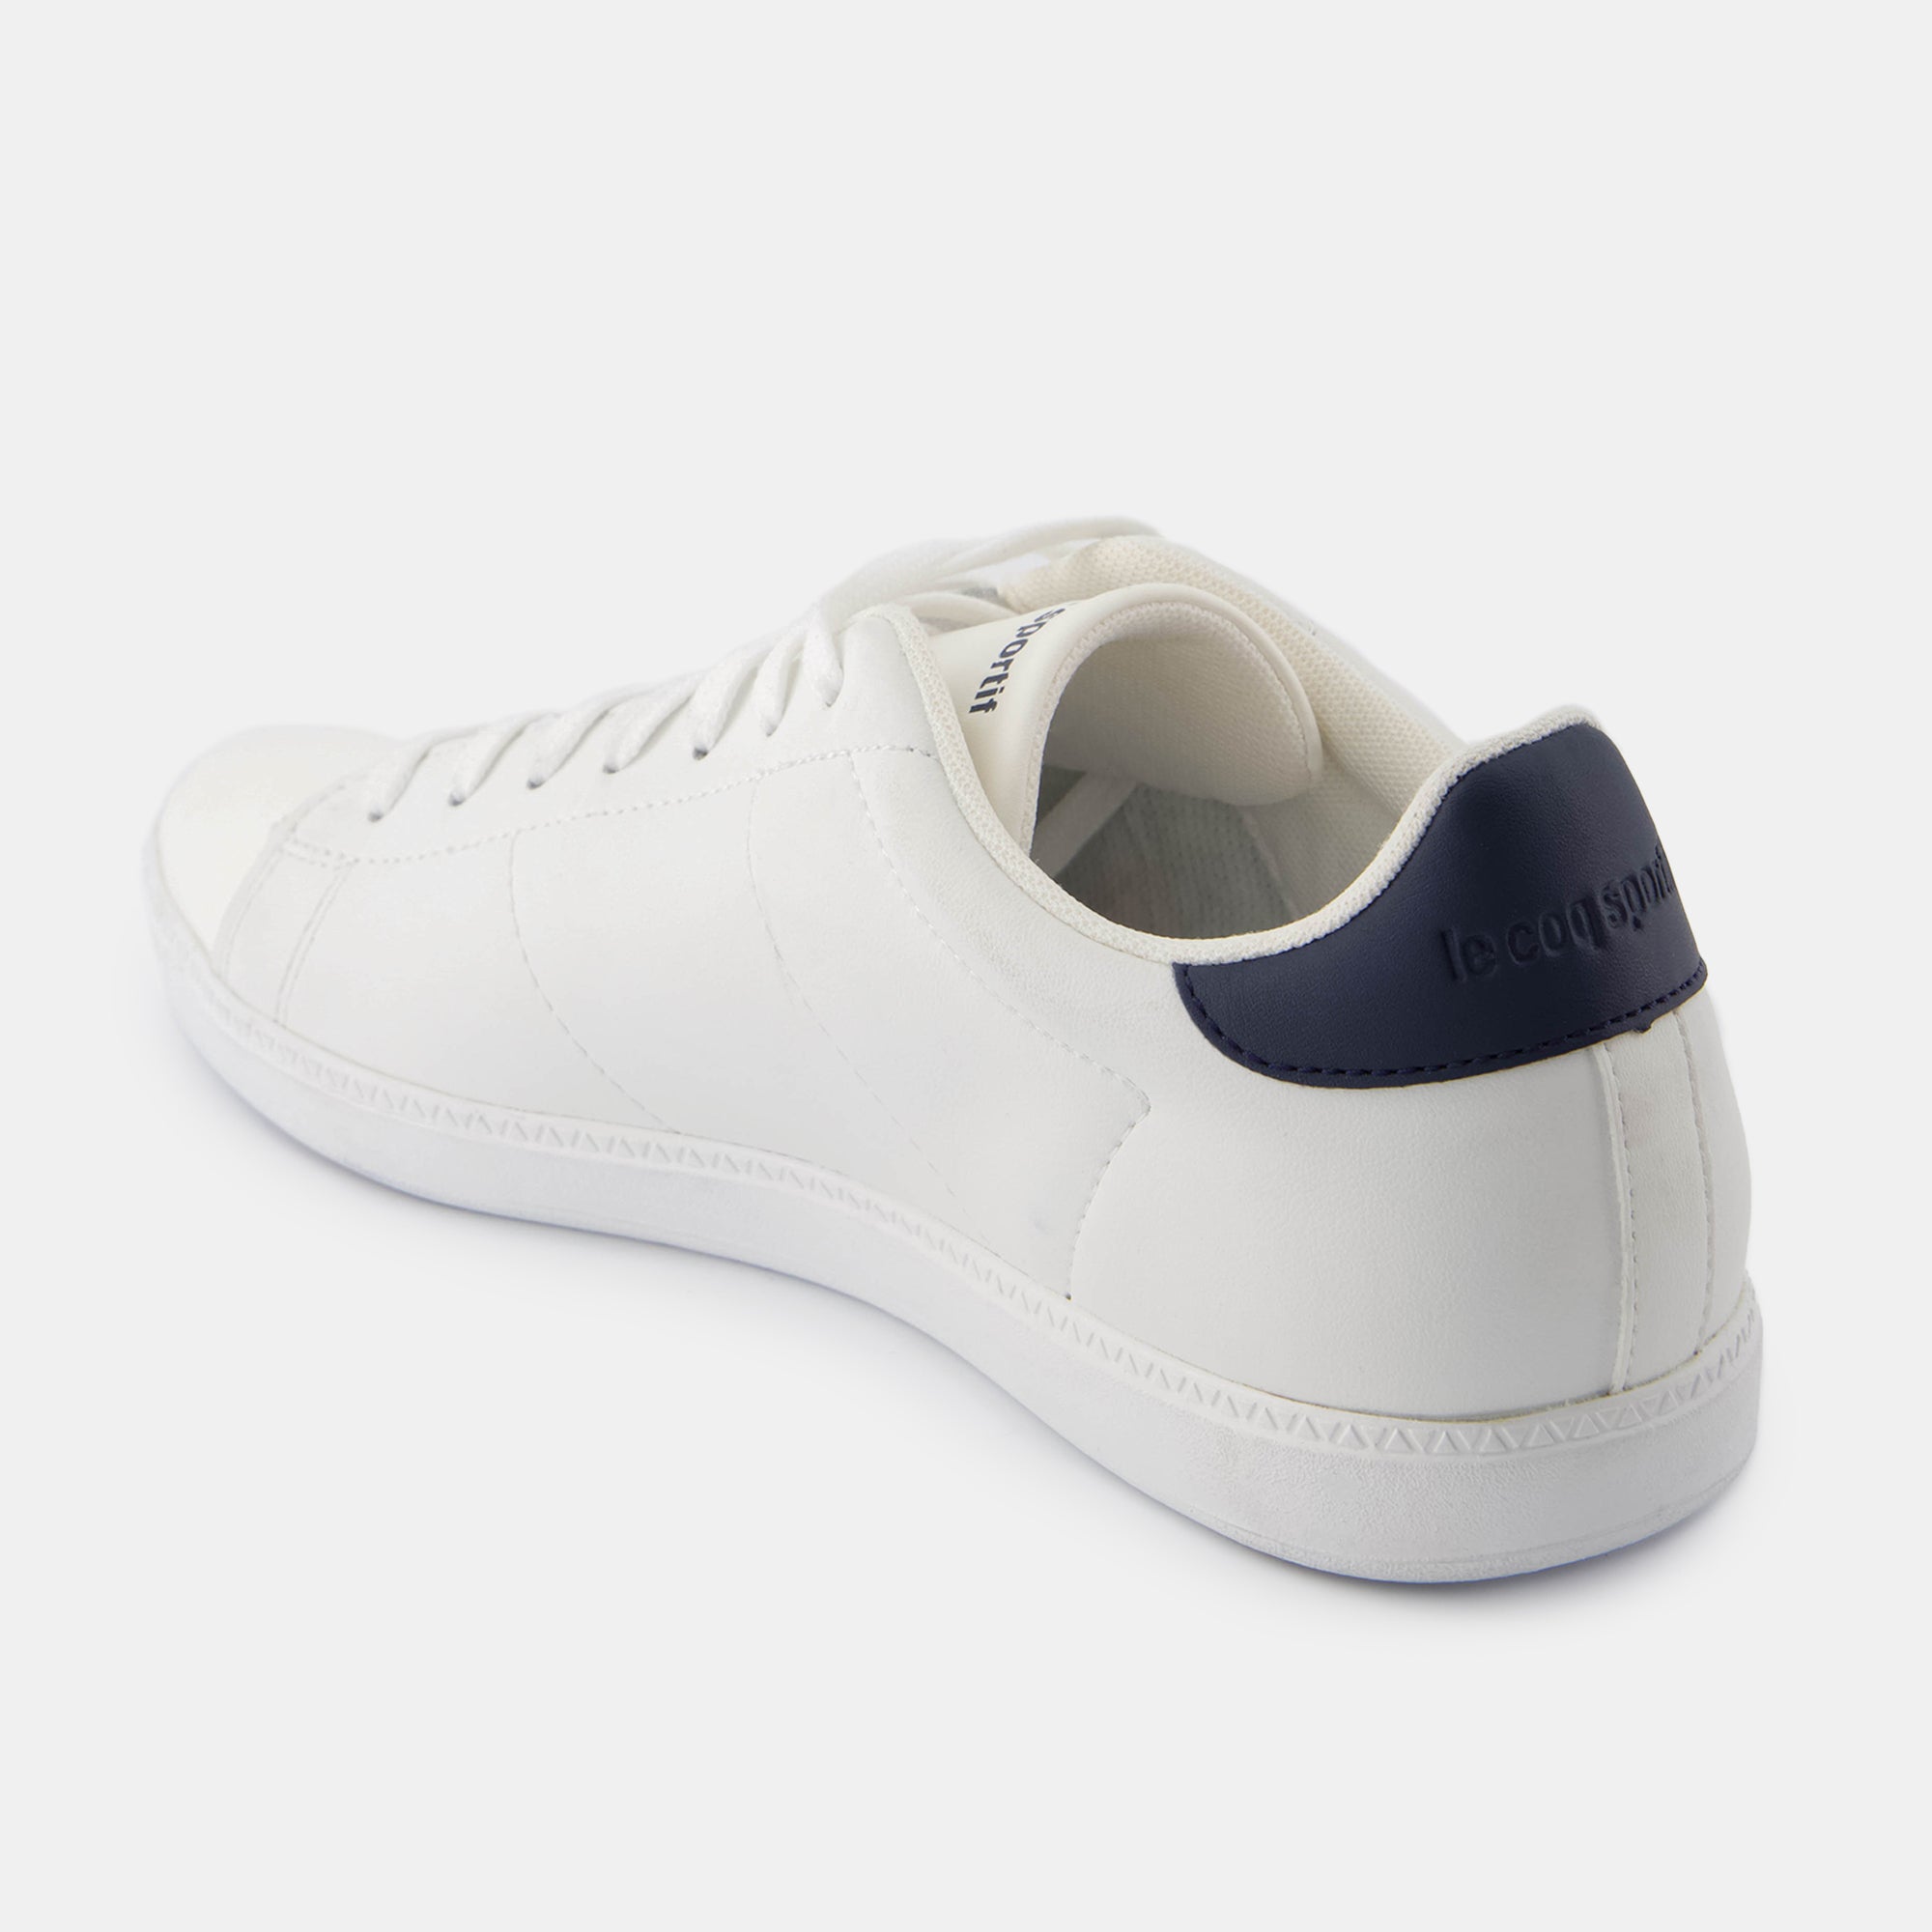 2423203-COURTSET_2 optical white/dress blue  | Shoes COURTSET_2 Unisex